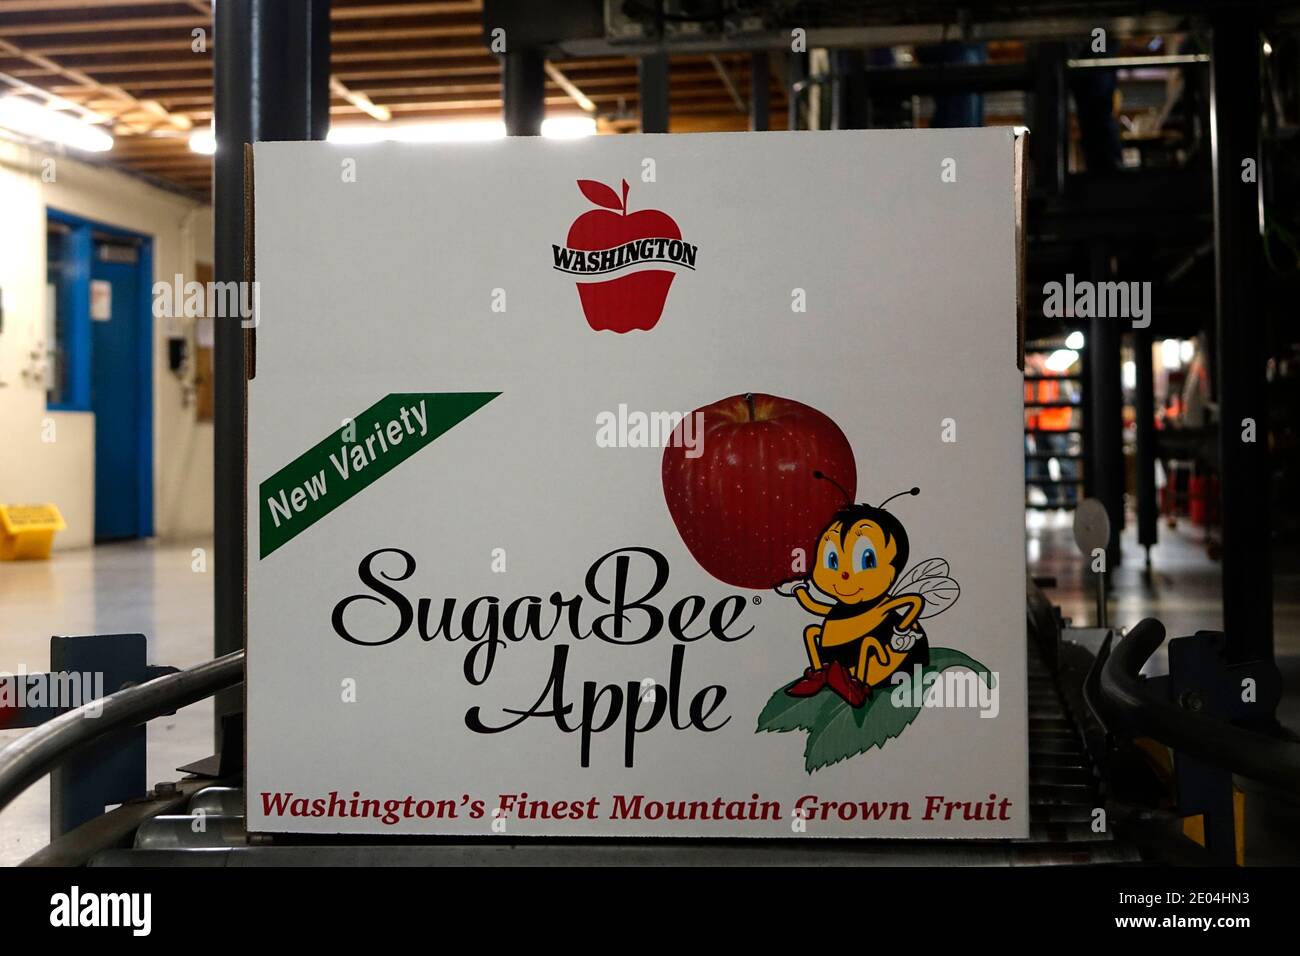 Sugar Bee Apples, Apples